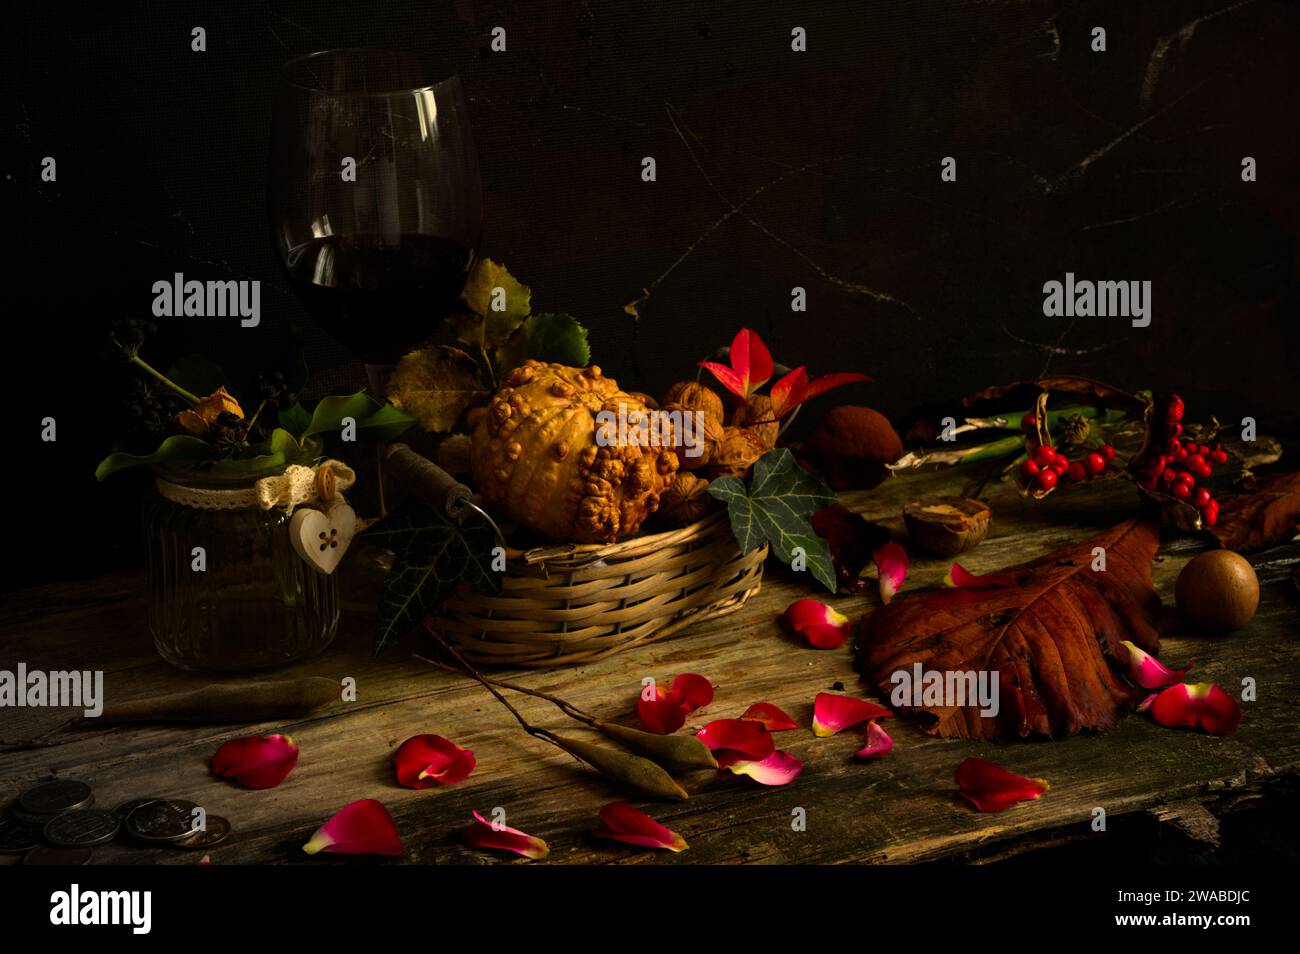 Naturaleza muerta flamenca con comida, flores, semillas. Clasificación amarilla y marrón Foto de stock